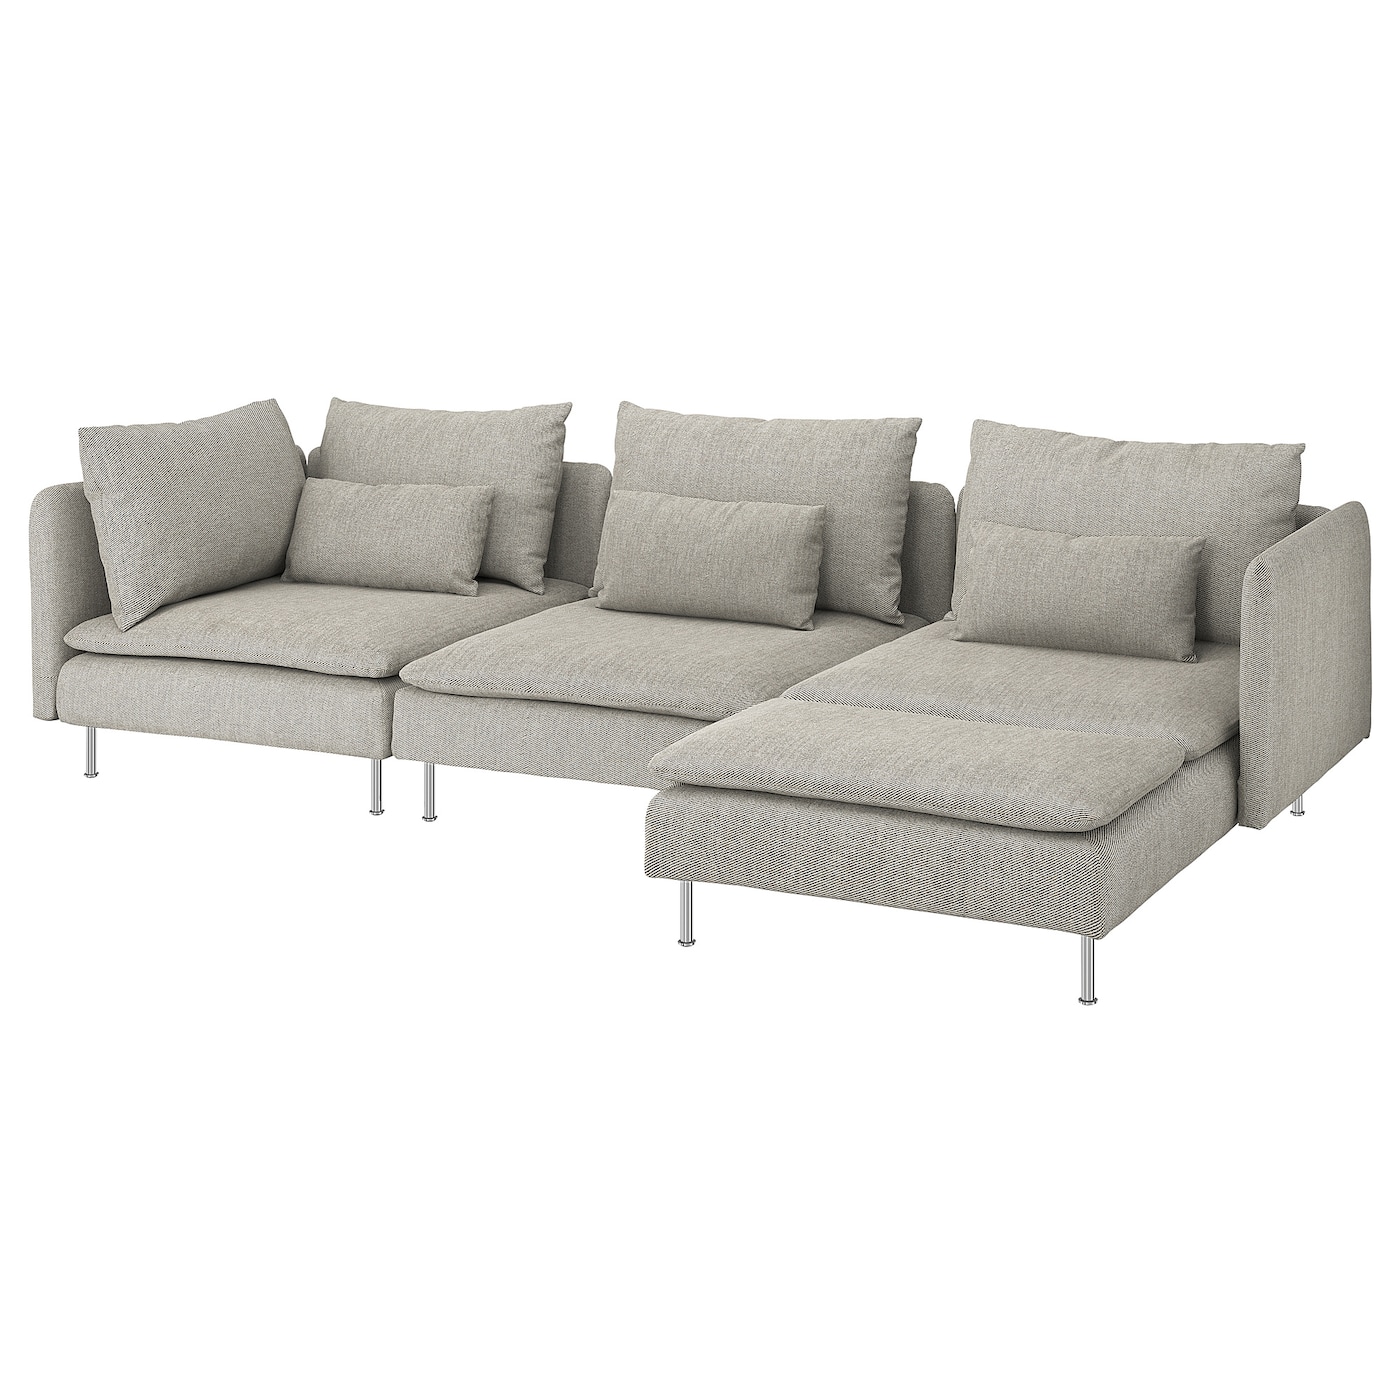 3-местный диван и козетка - IKEA SÖDERHAMN/SODERHAMN, 99x291см, серый/светло-серый, СЕДЕРХАМН ИКЕА